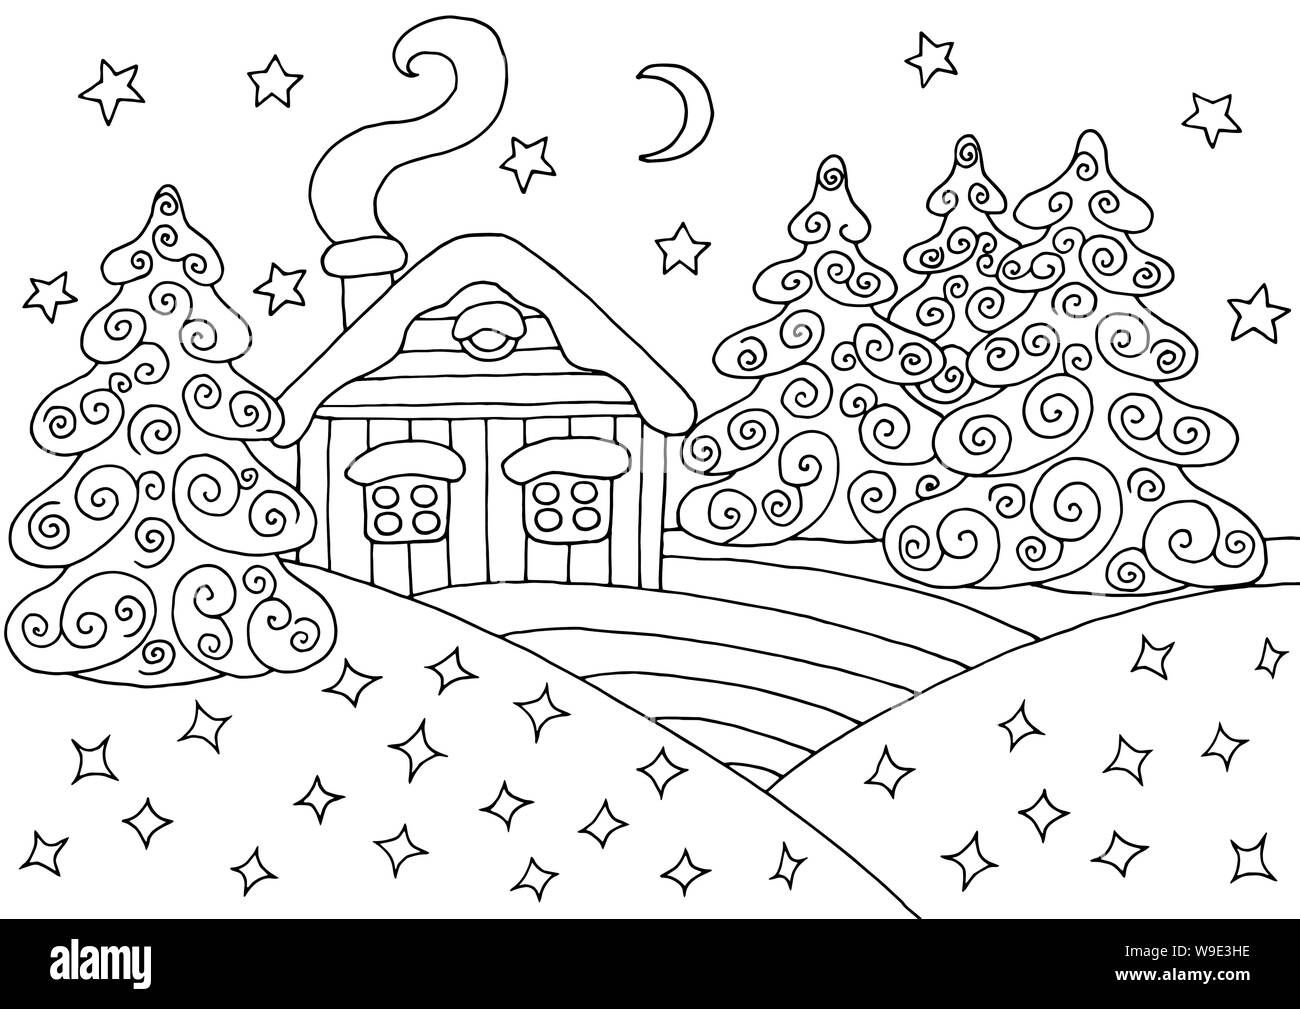 Casa In Inverno La Neve Bosco Di Abete Rosso Pagina Da Colorare Per Bambini E Adulti Immagine E Vettoriale Alamy